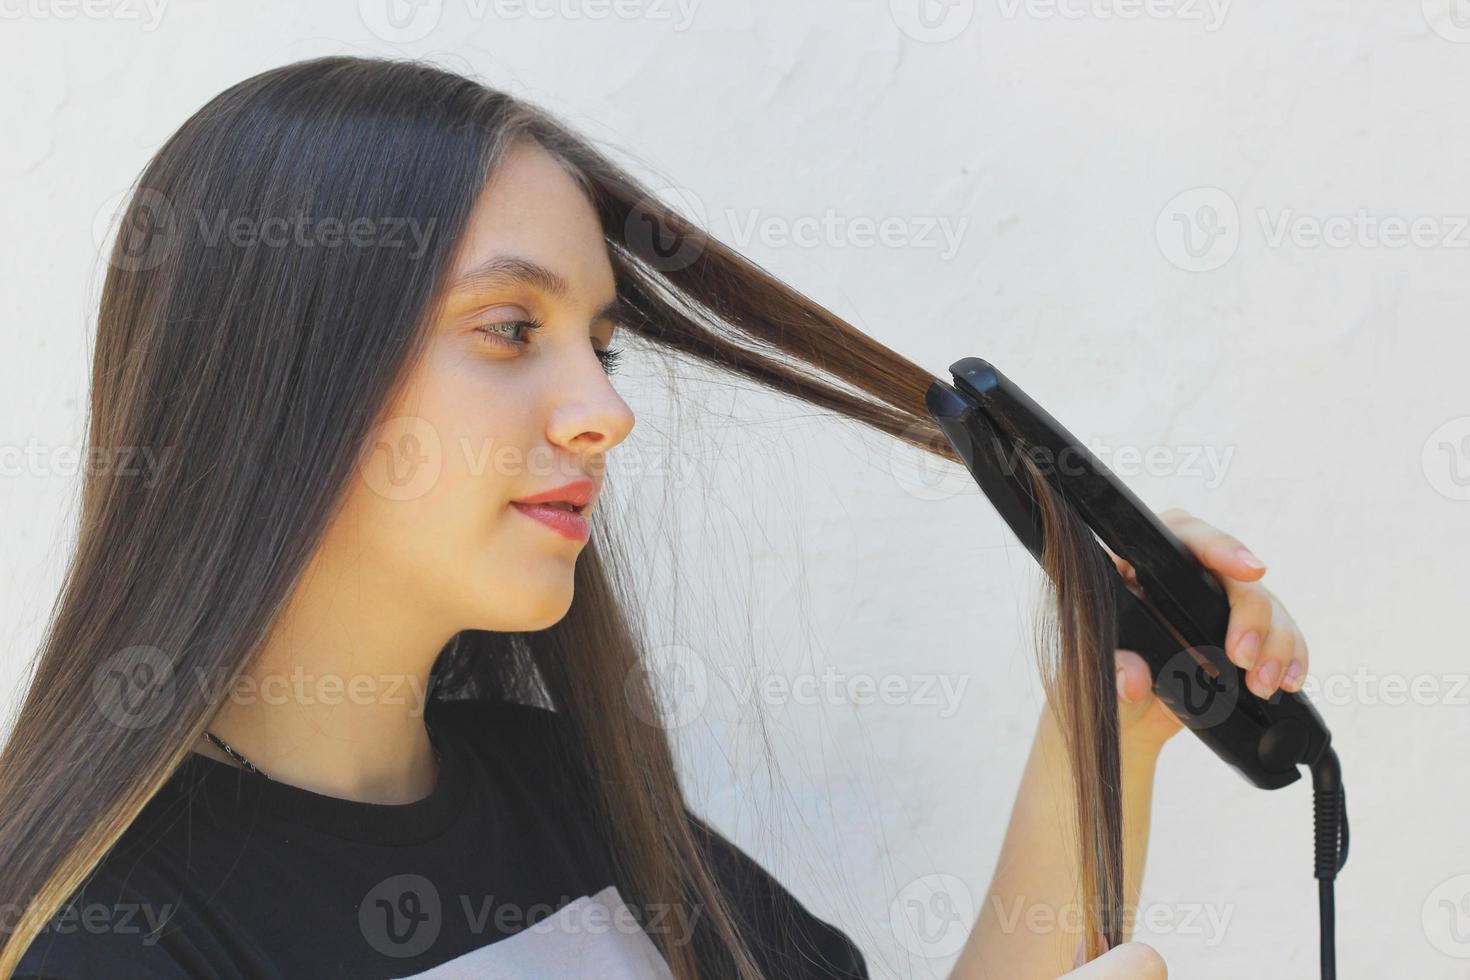 ritratto di una giovane ragazza che usa una piastra per capelli ricci, stirandosi i capelli con un ferro da stiro foto